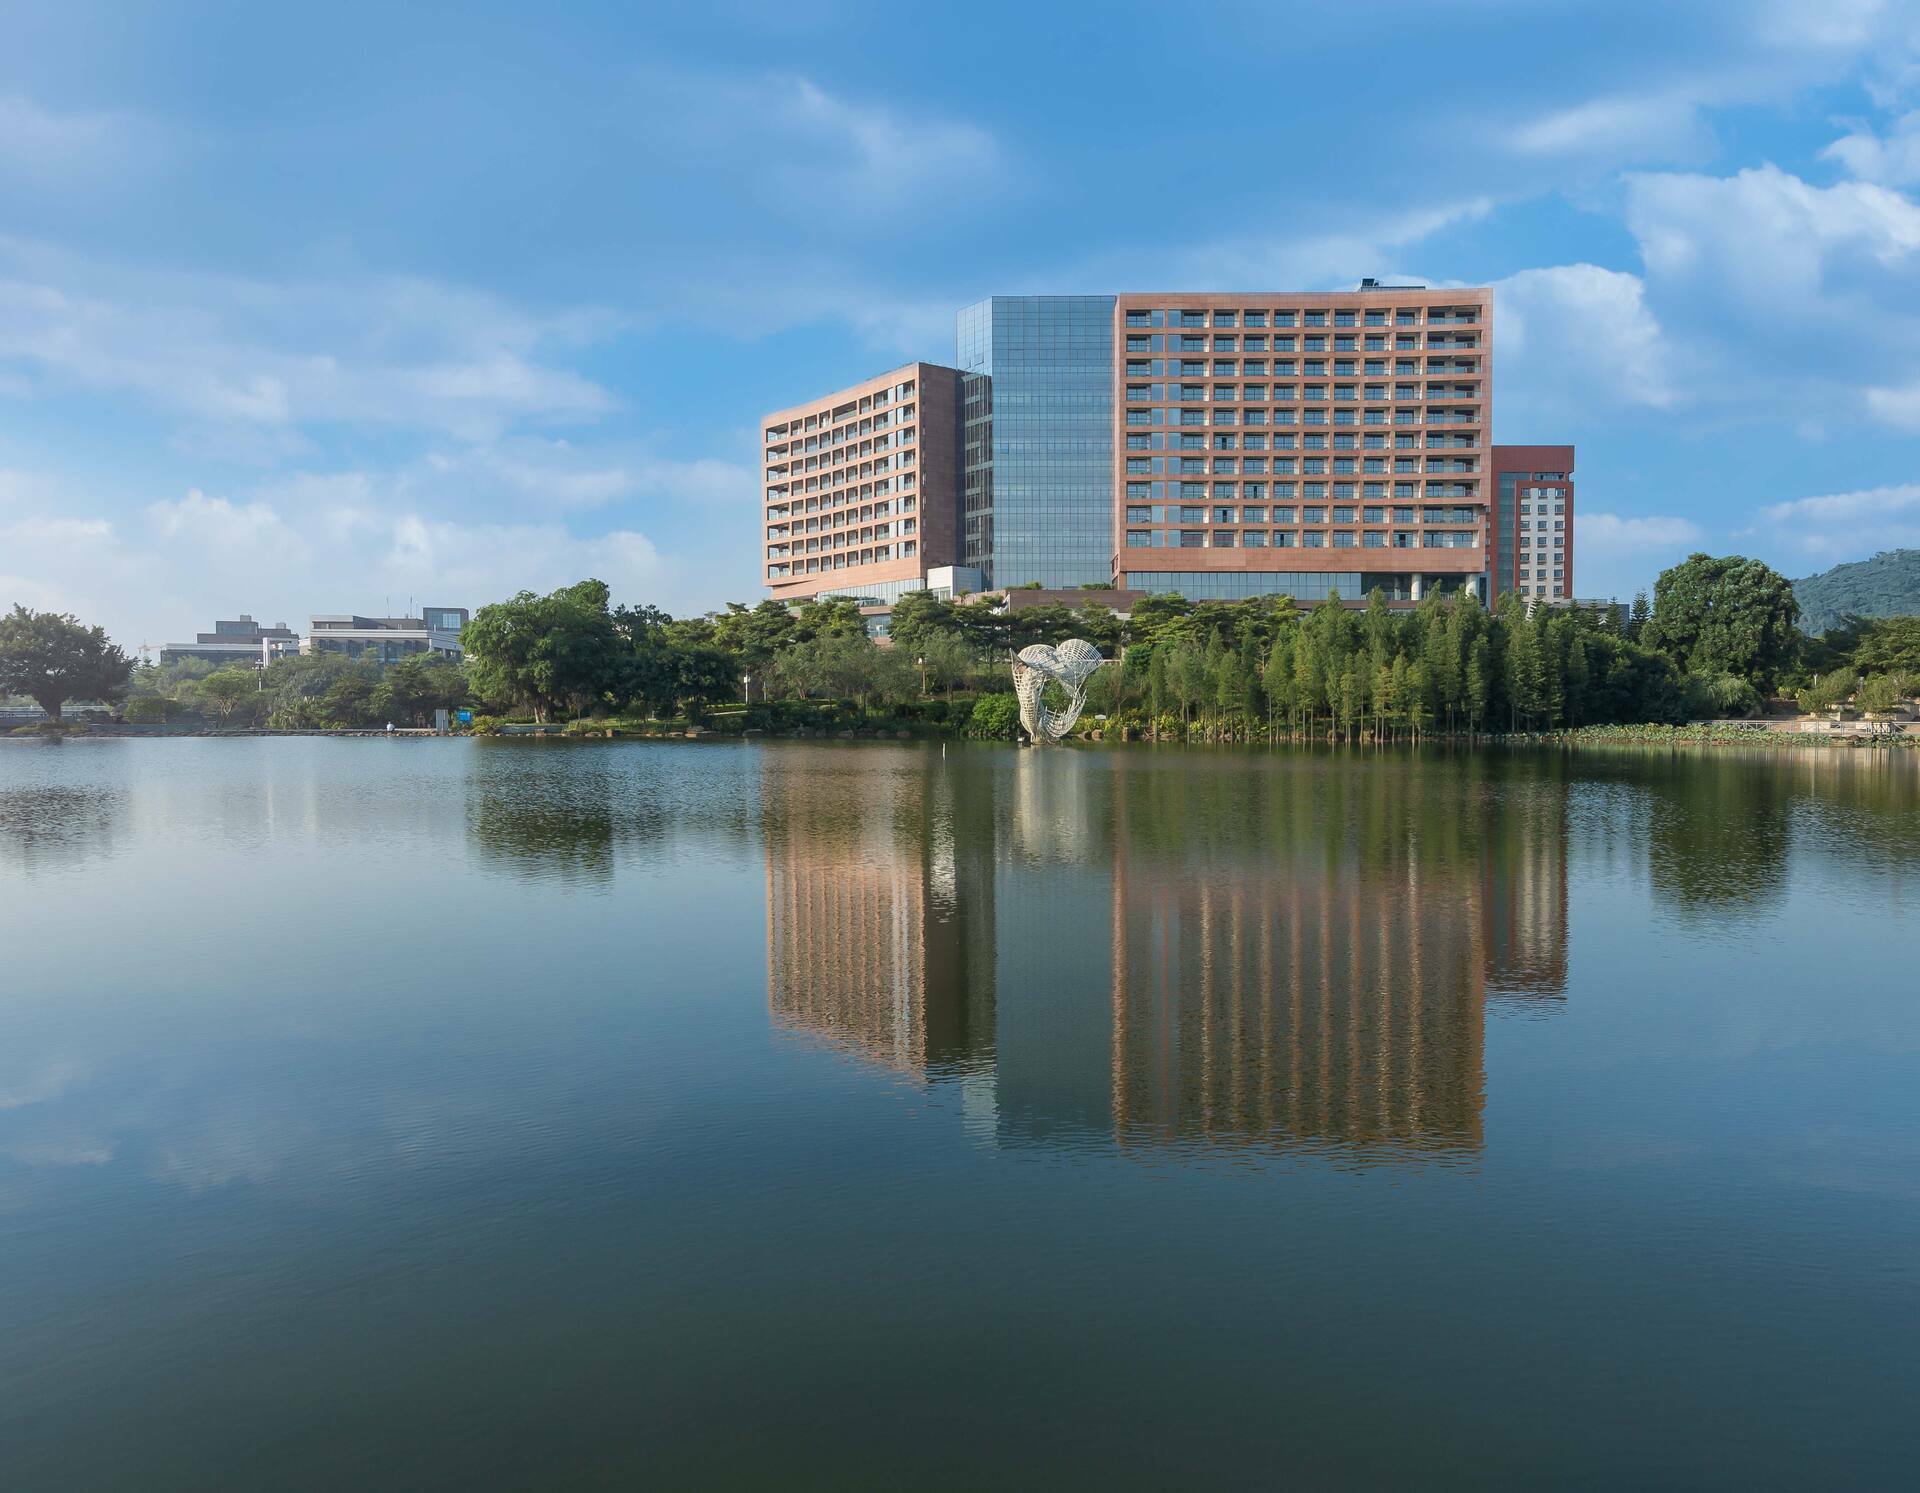 Photo of Doubletree by Hilton Hotel Guangzhou Science City, Guangzhou, Huang Pu District, China